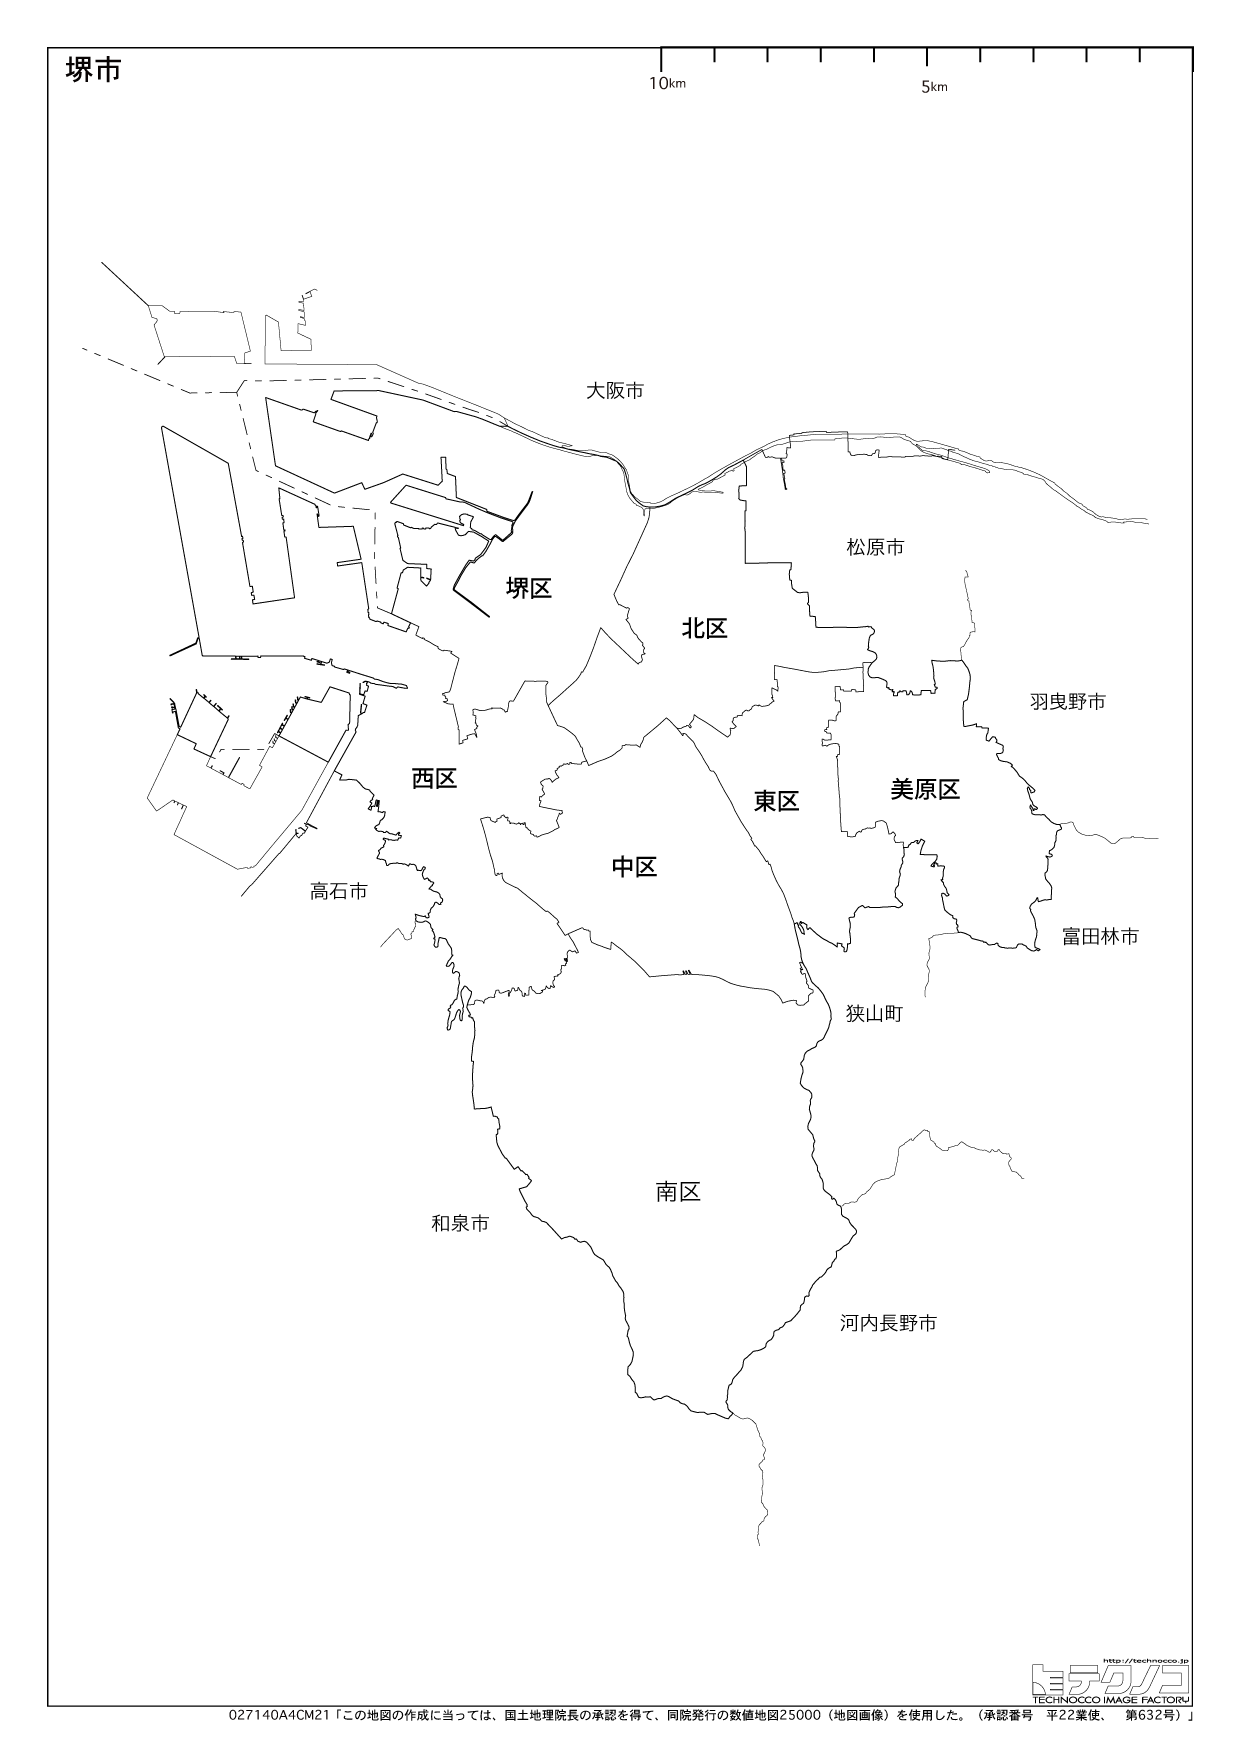 大阪府の白地図と市町村の合併情報